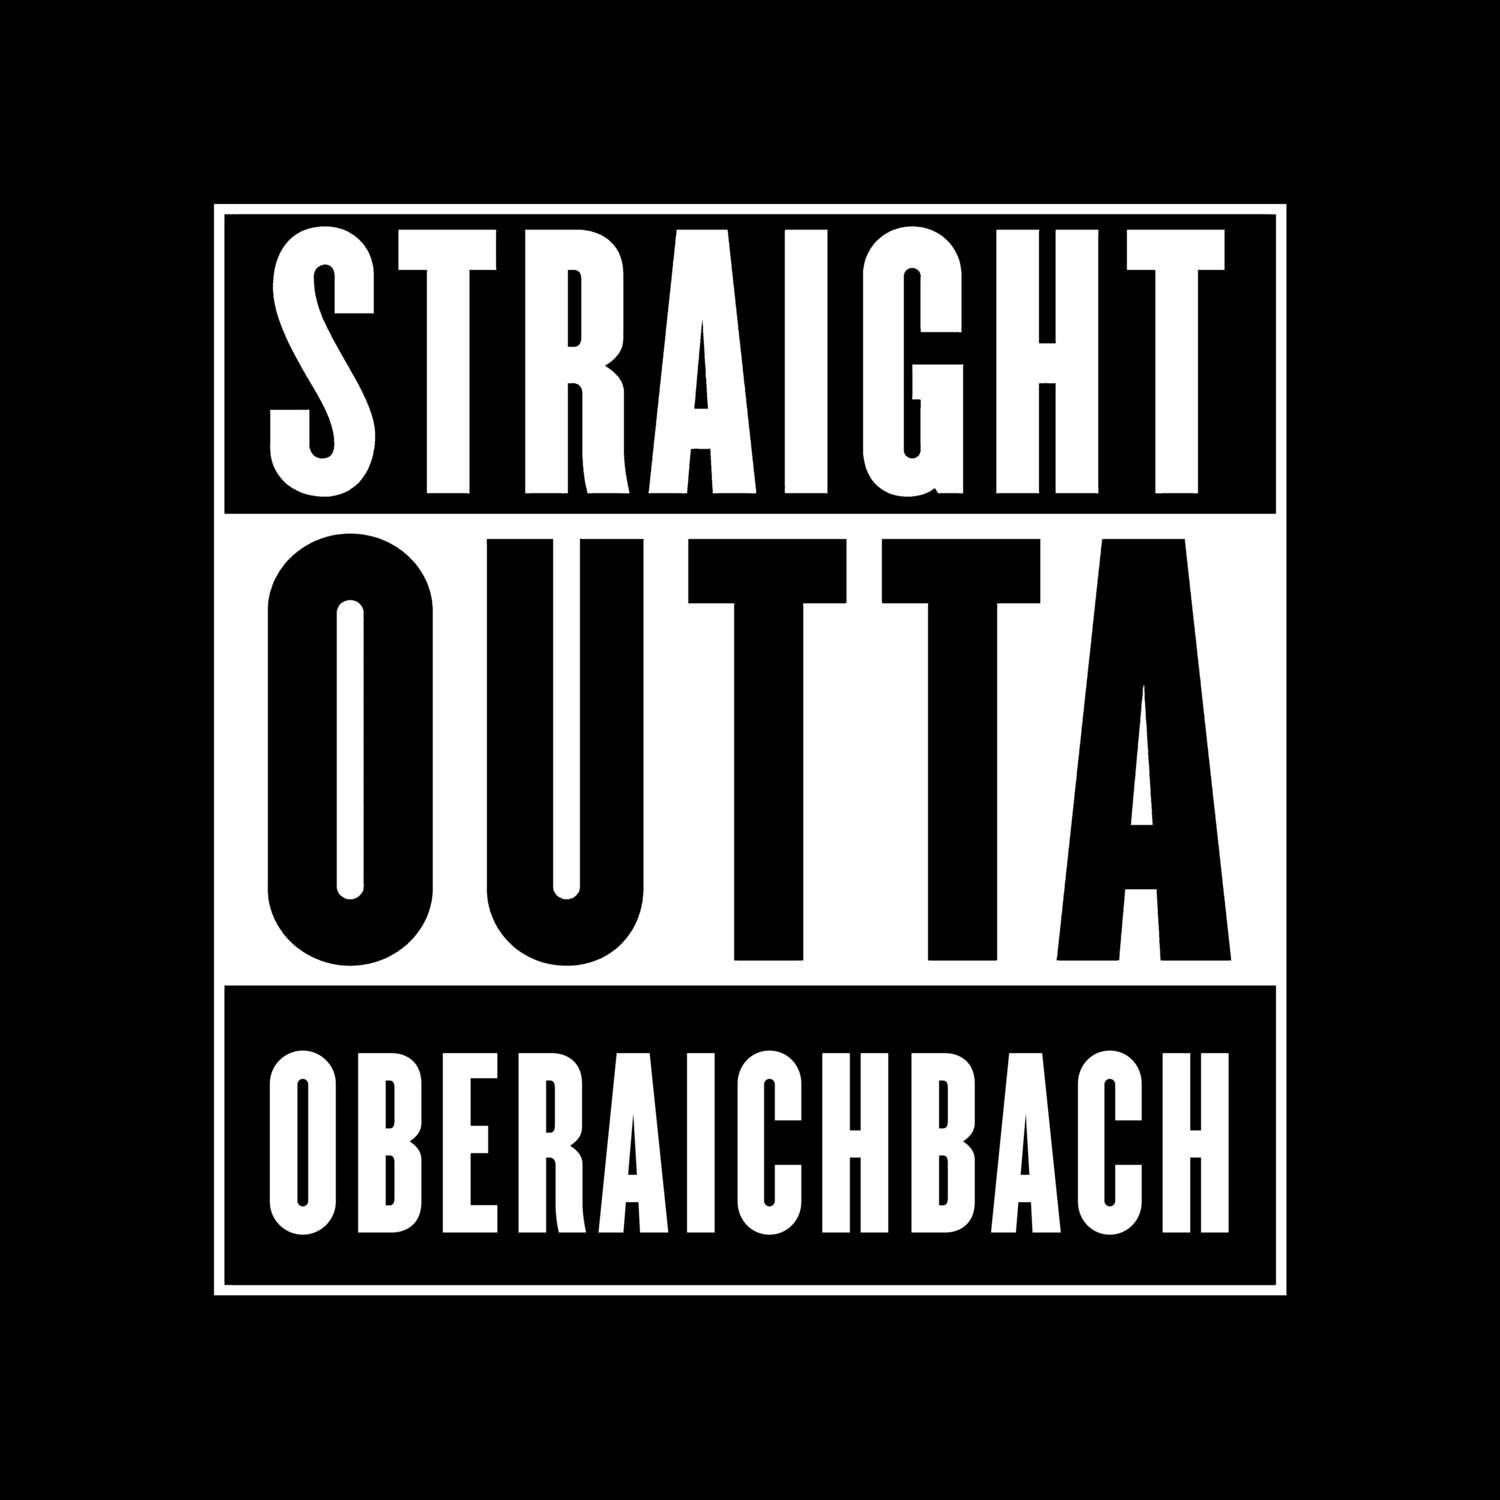 Oberaichbach T-Shirt »Straight Outta«